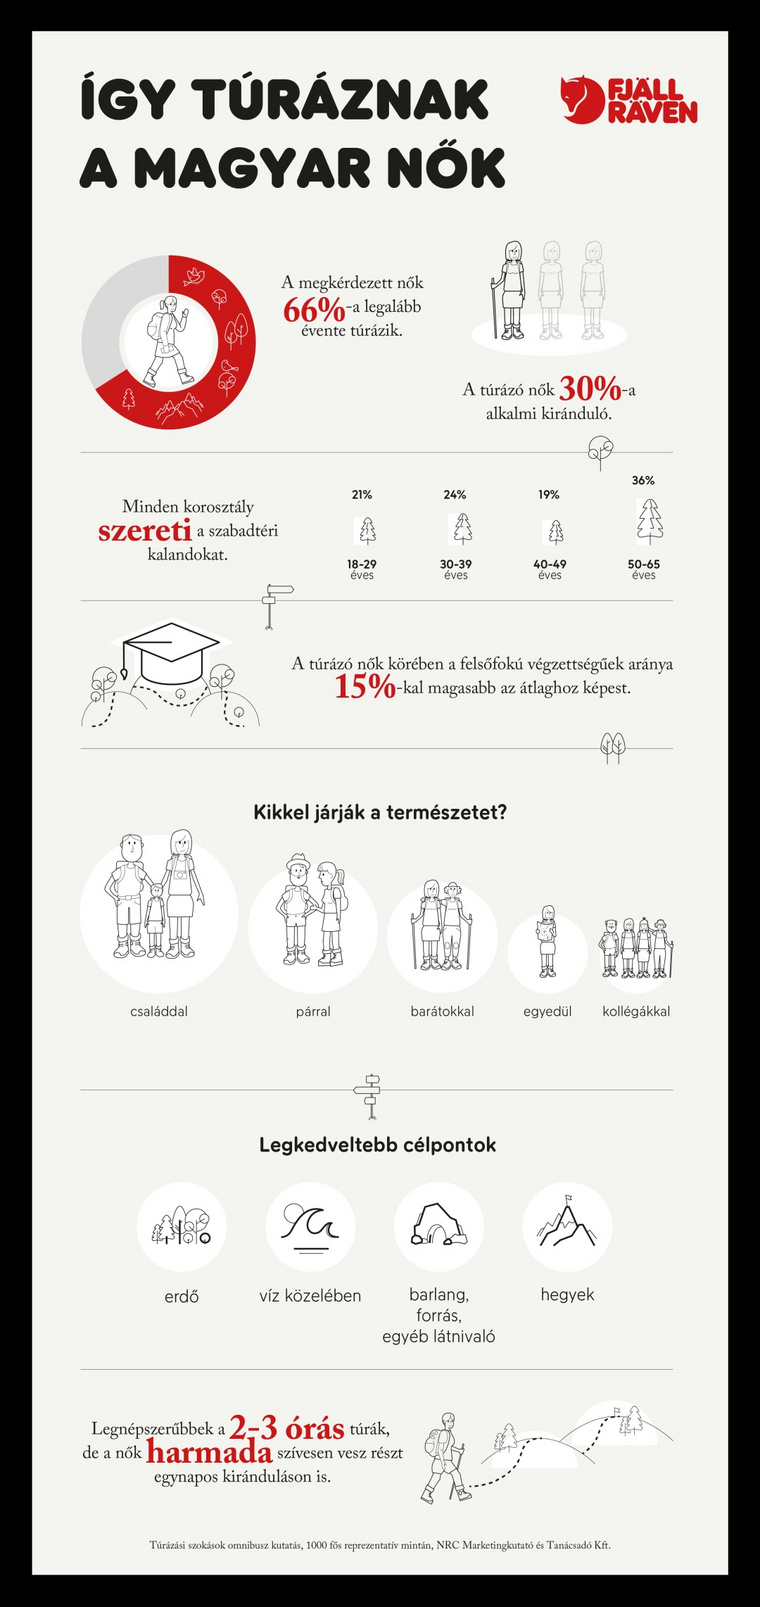 Fjallraven Nagy noi turakorkep infografika